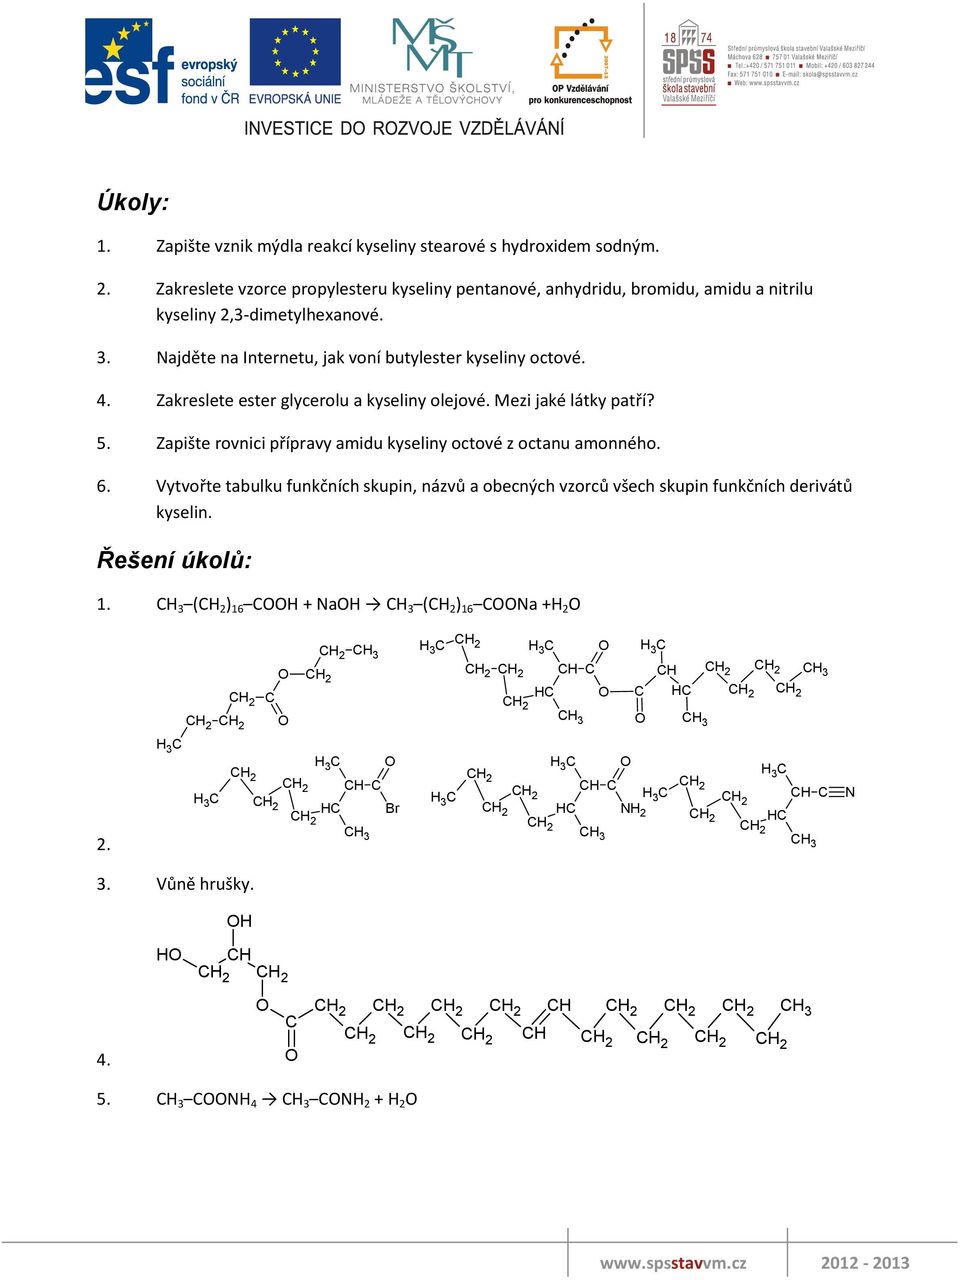 Najděte na Internetu, jak voní butylester kyseliny octové. 4. Zakreslete ester glycerolu a kyseliny olejové. Mezi jaké látky patří? 5.